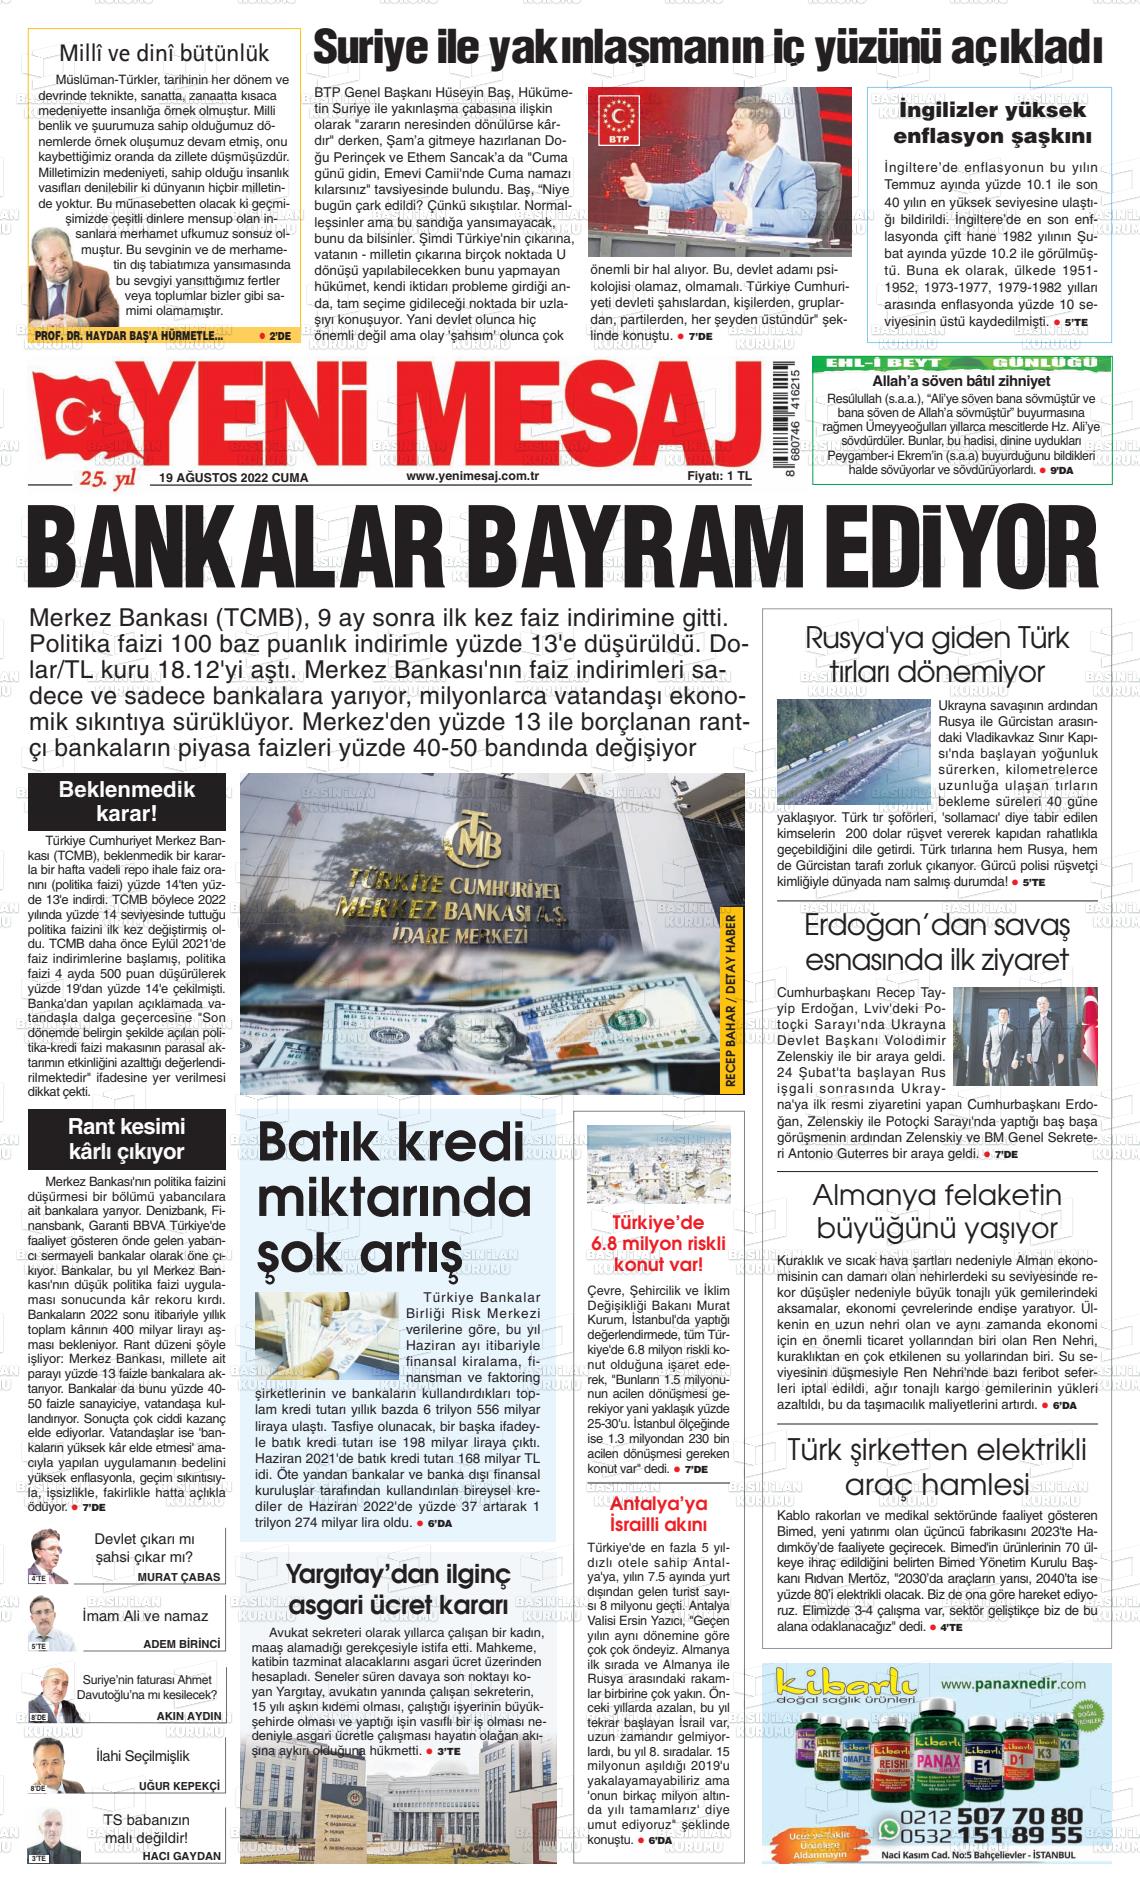 19 Ağustos 2022 Yeni Mesaj Gazete Manşeti